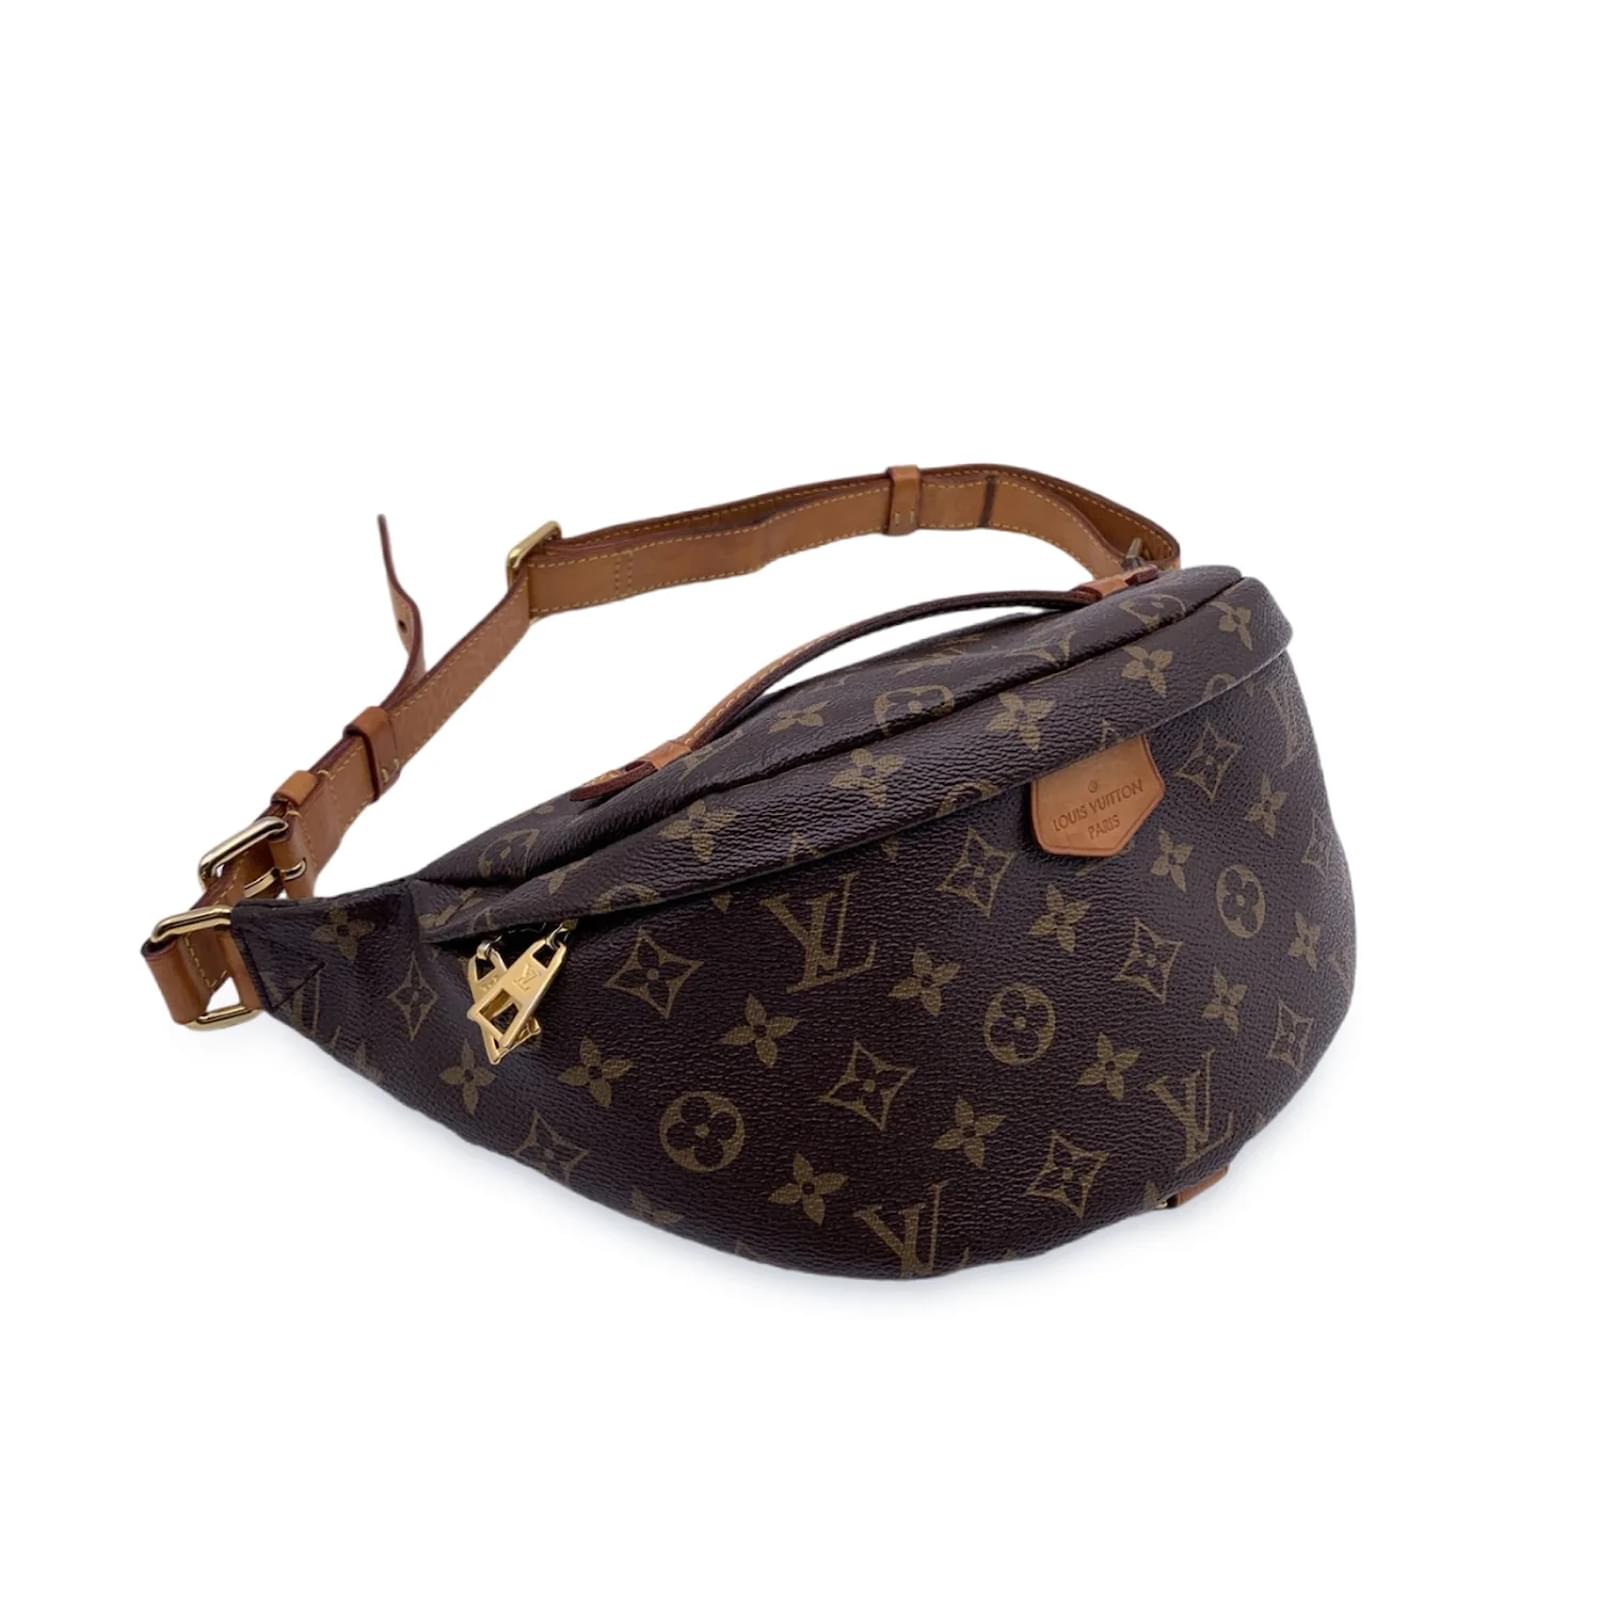 Bum bag / sac ceinture leather clutch bag Louis Vuitton Brown in